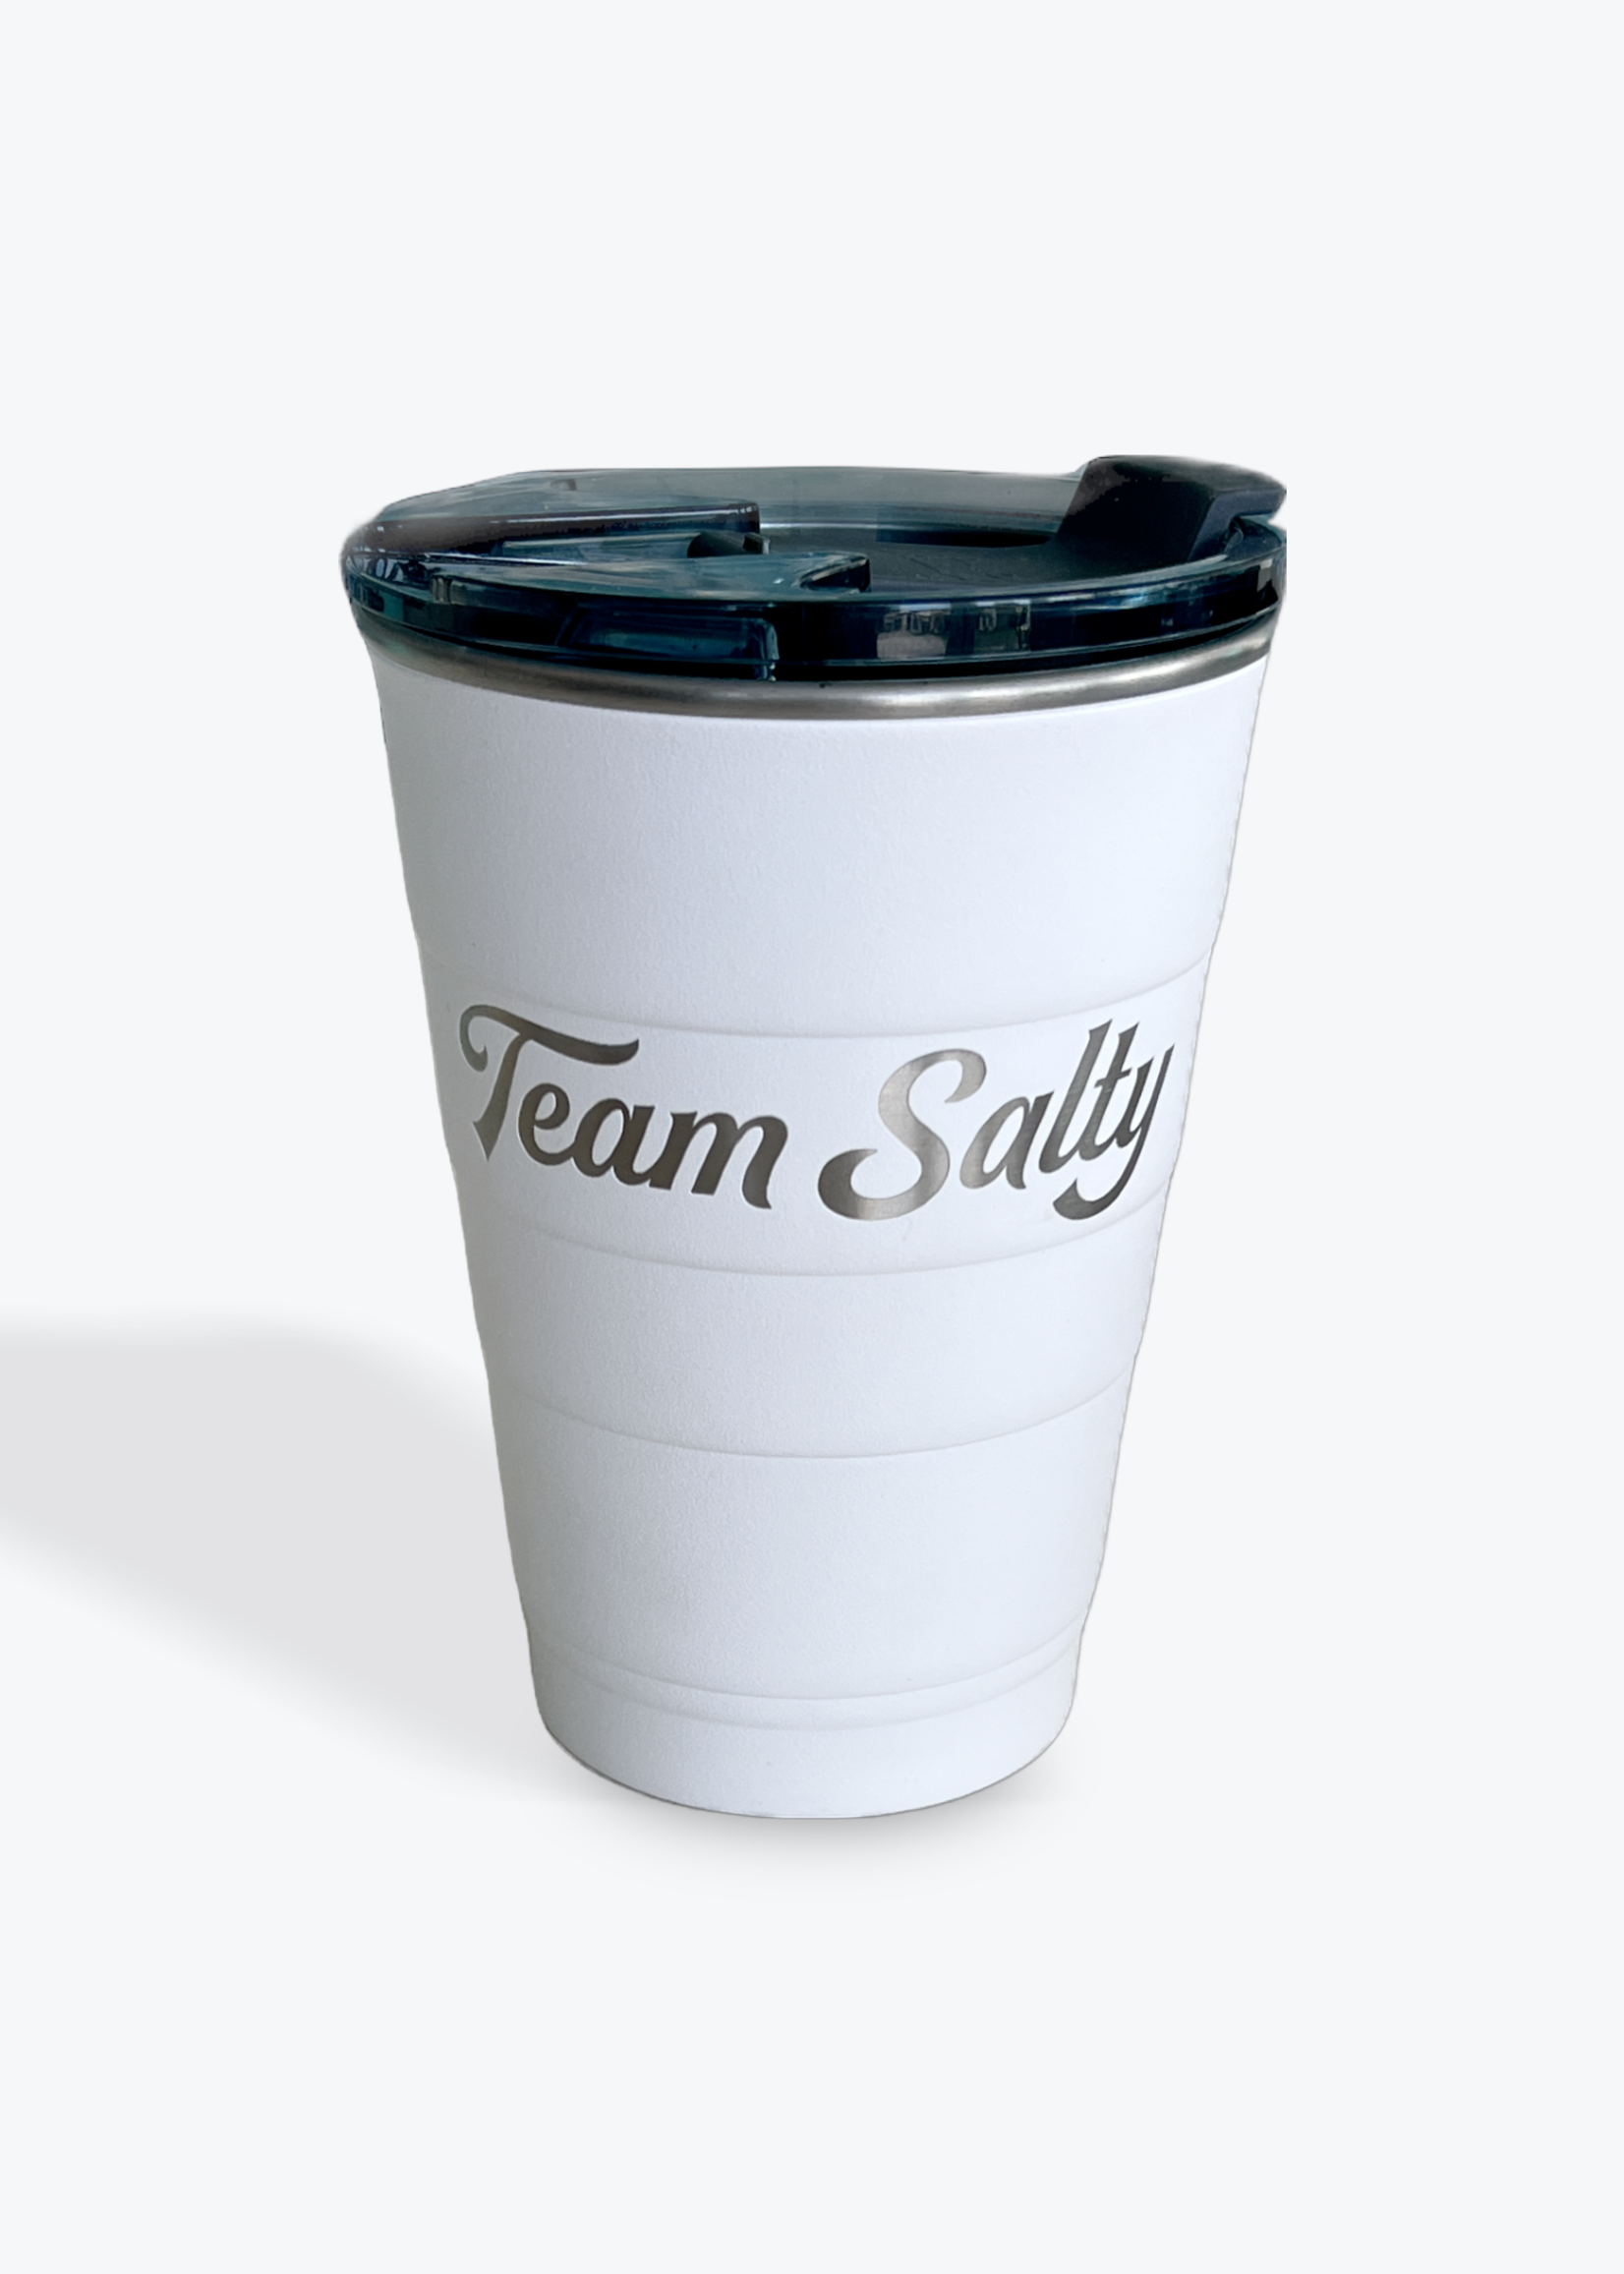 https://cdn.shoplightspeed.com/shops/617903/files/57161649/1652x2313x1/team-salty-team-salty-reusable-solo-cup-16oz.jpg